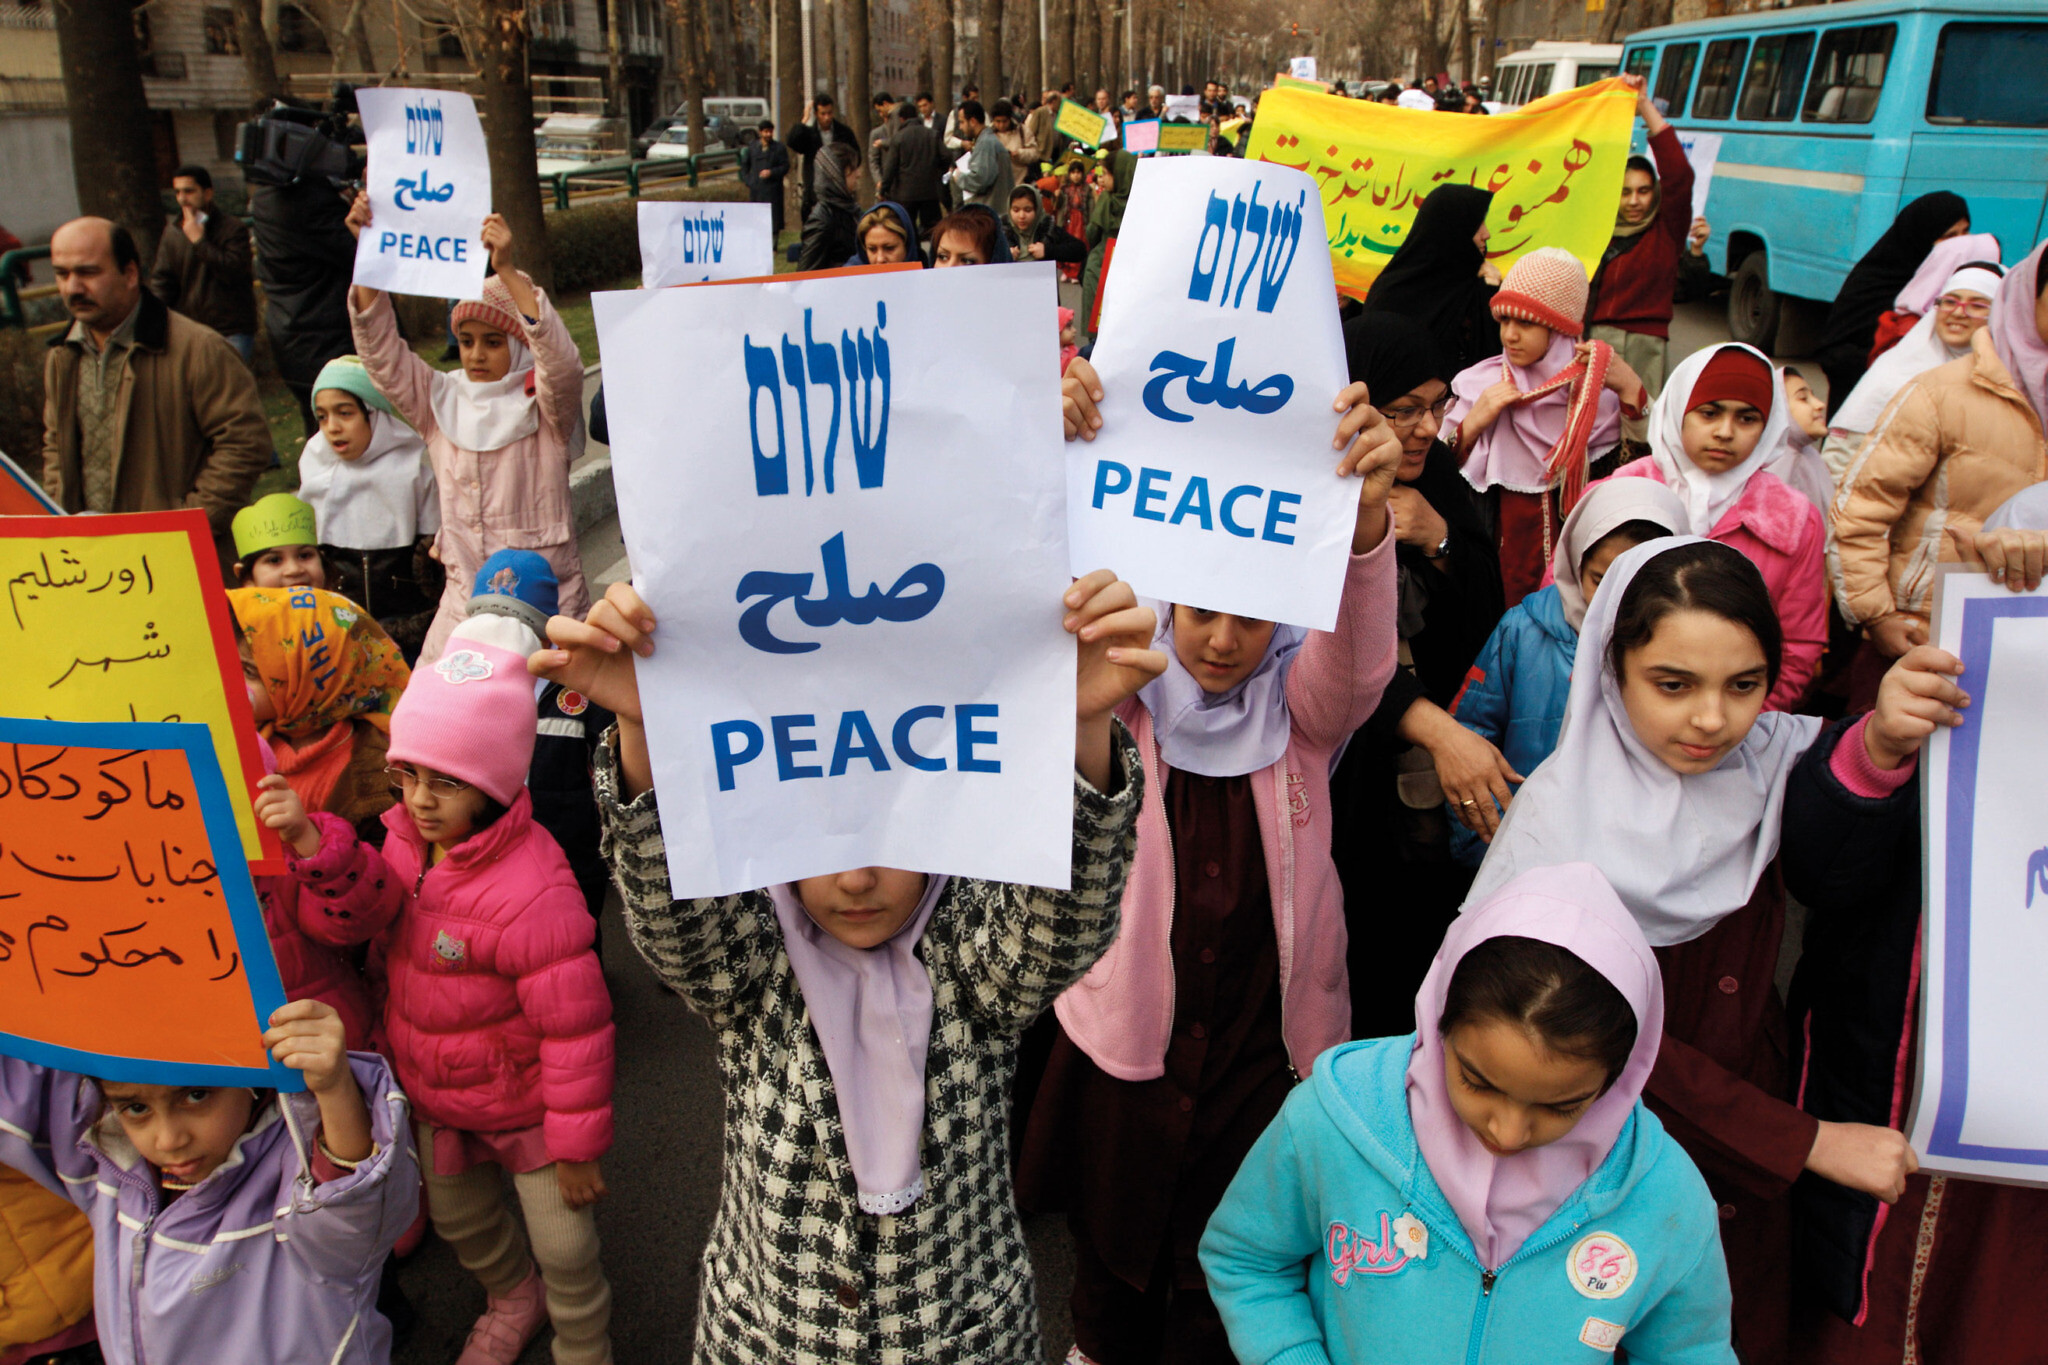 Des jeunes filles juives manifestent pour la paix à Téhéran. (Crédit : Hassan Sarbakhsian/via JTA)